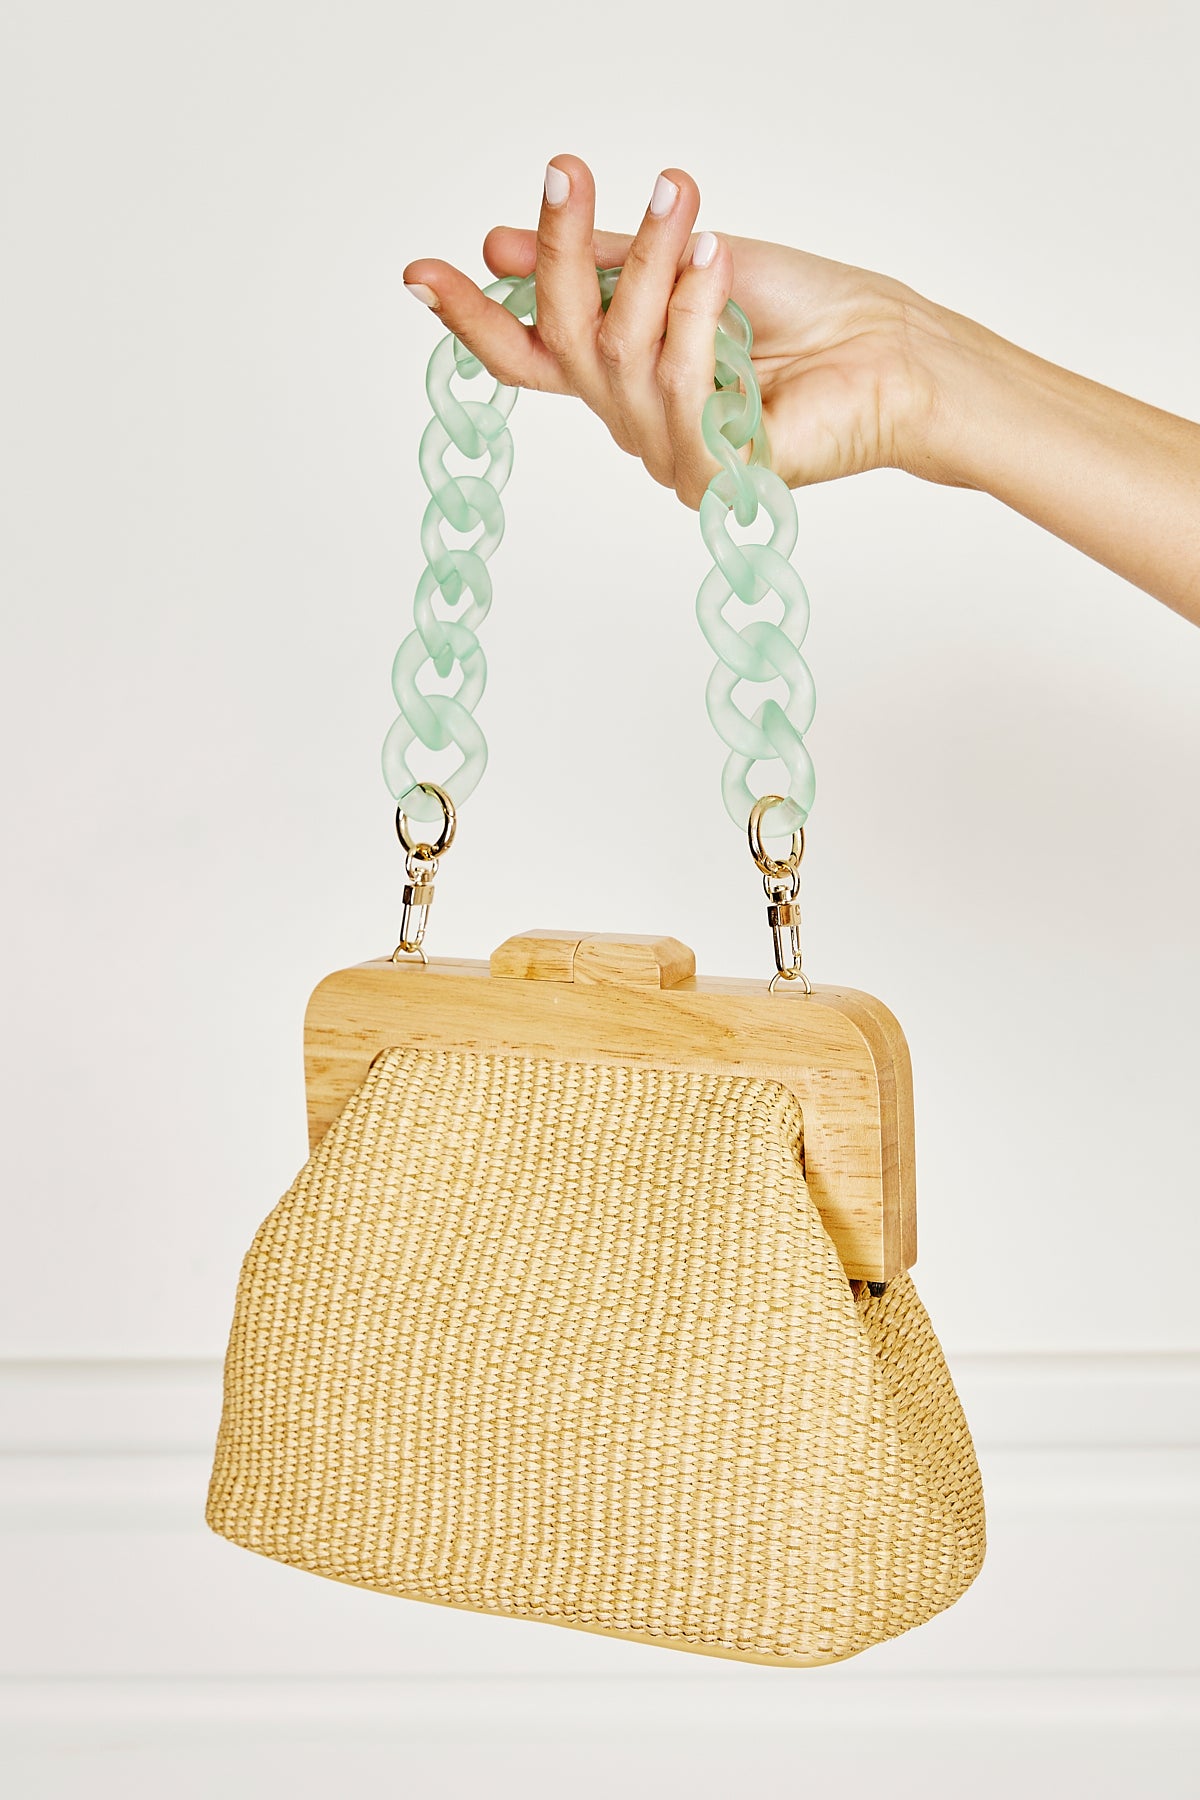 Curb Bag Chain - Aquamarine OR Sea Green